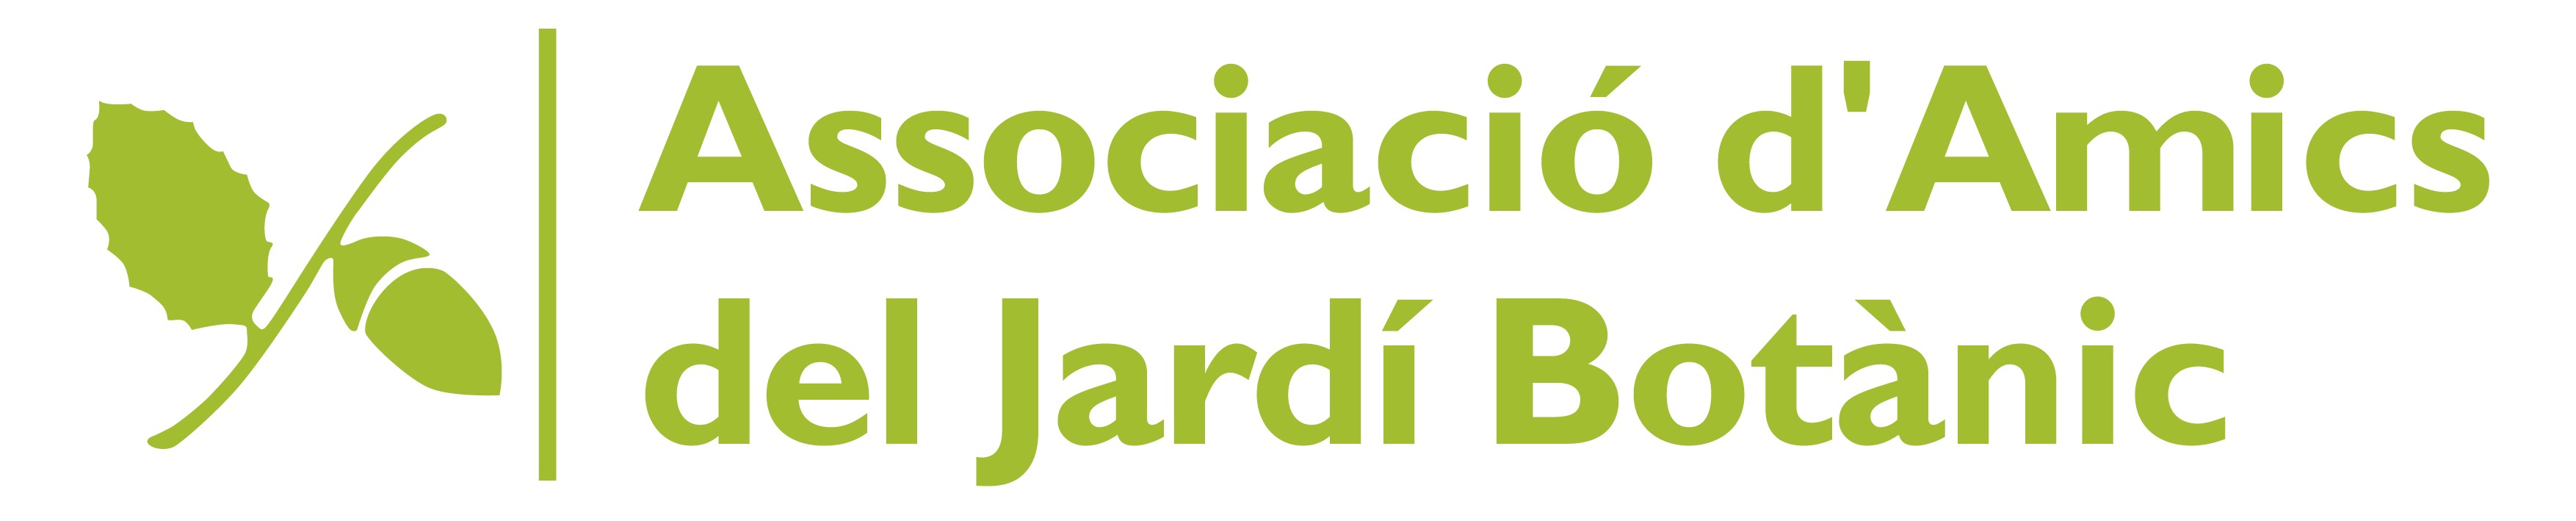 Logo Associació d'Amics del Jardí Botànic de Barcelona